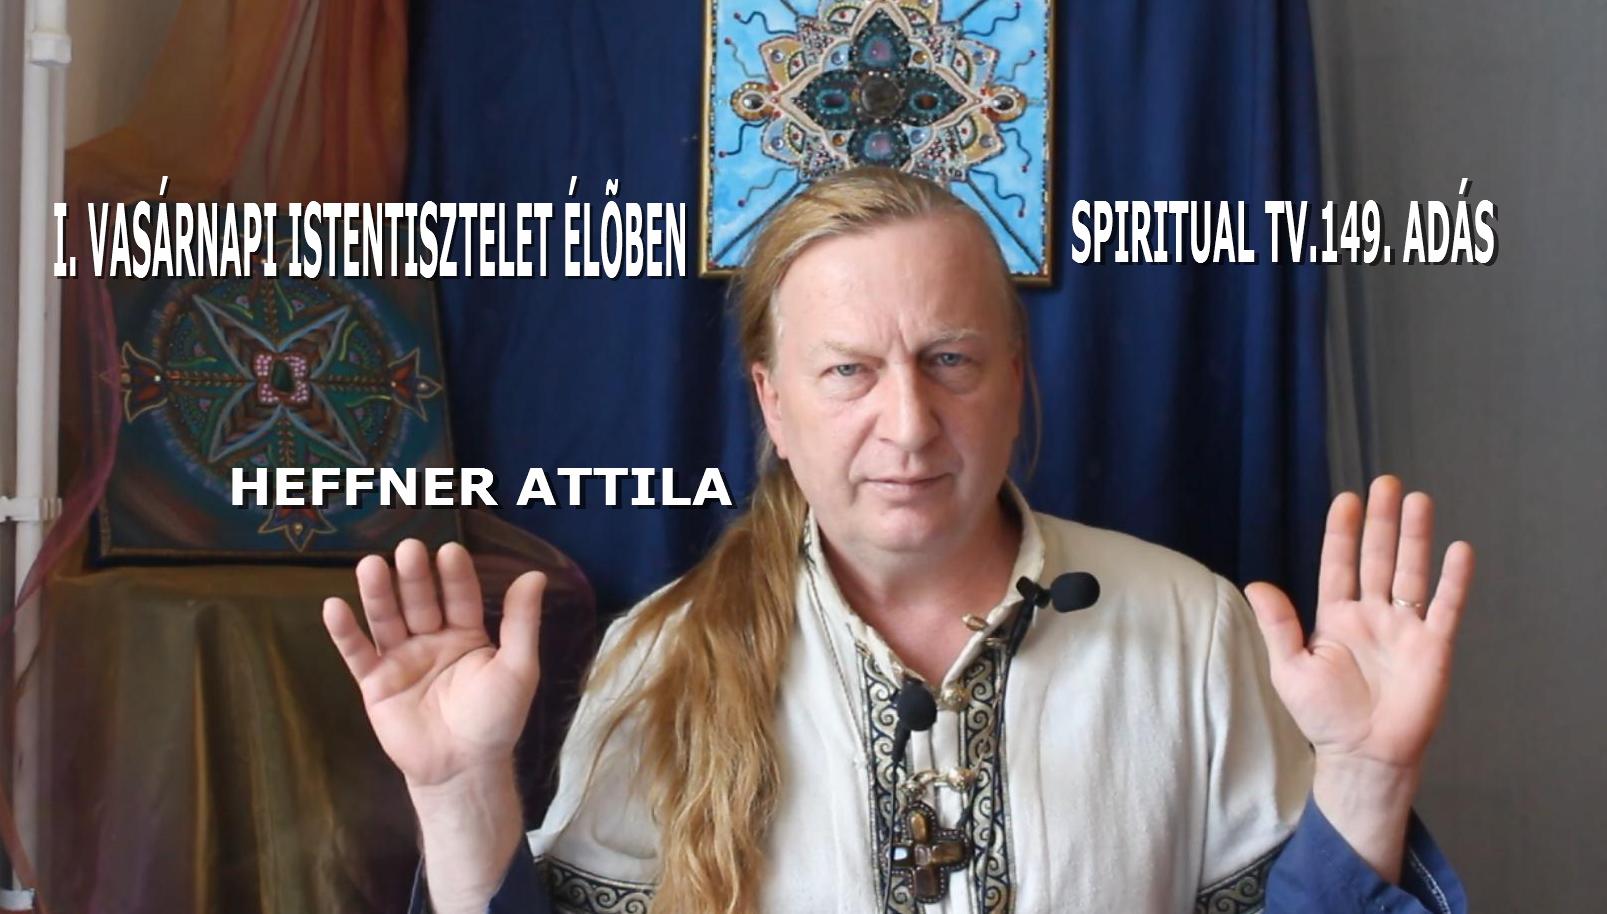 www.spiritualtv.hu 2020.07.05.